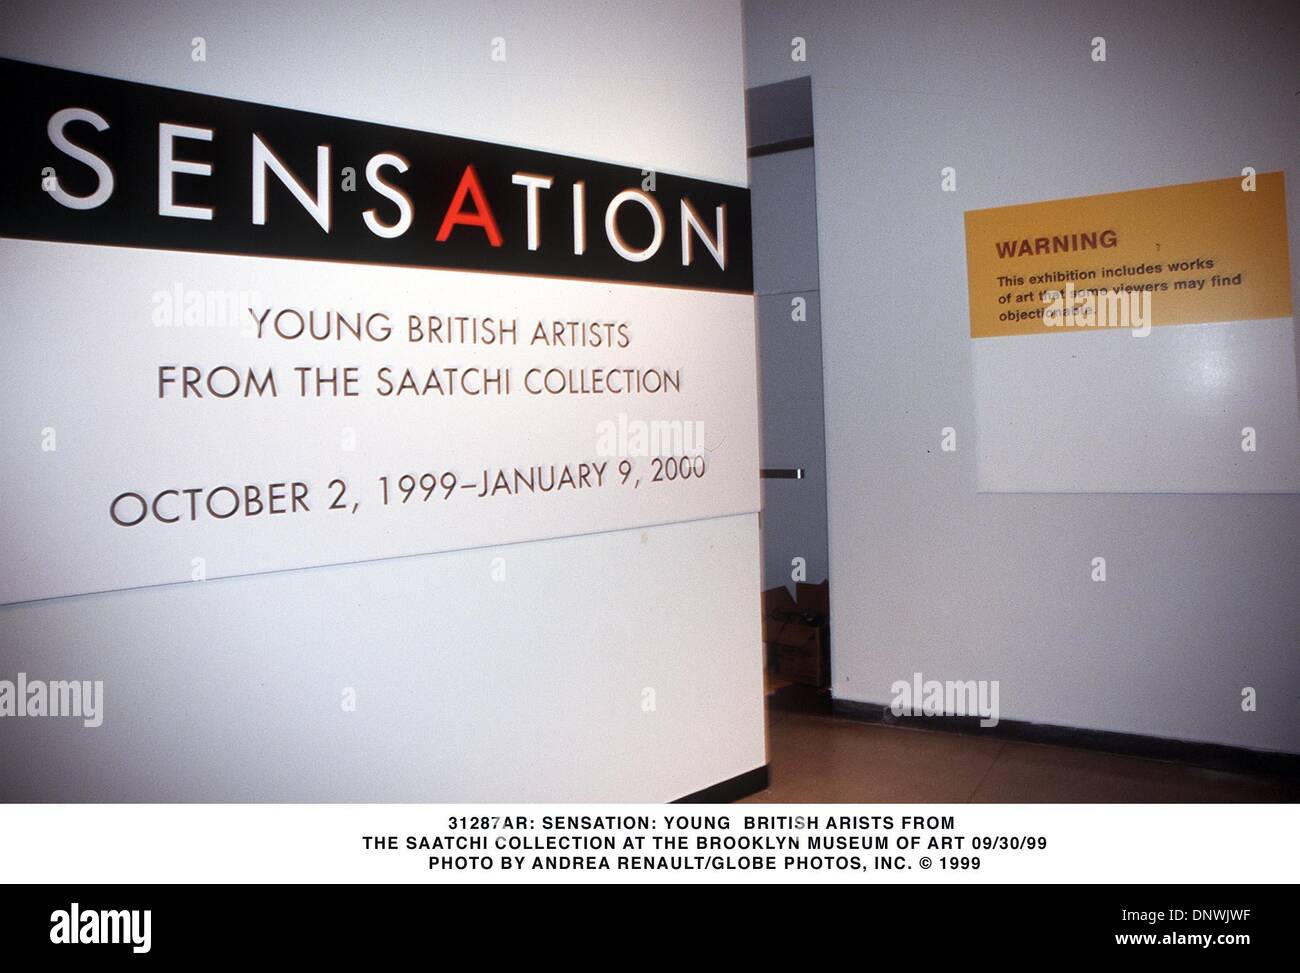 Sett. 30, 1999 - 31287AR: Sensazione: Giovani artisti inglesi da.LA COLLEZIONE SAATCHI al Brooklyn Museum of Art 09/30/99. ANDREA RENAULT/ 1999(Credit Immagine: © Globo foto/ZUMAPRESS.com) Foto Stock